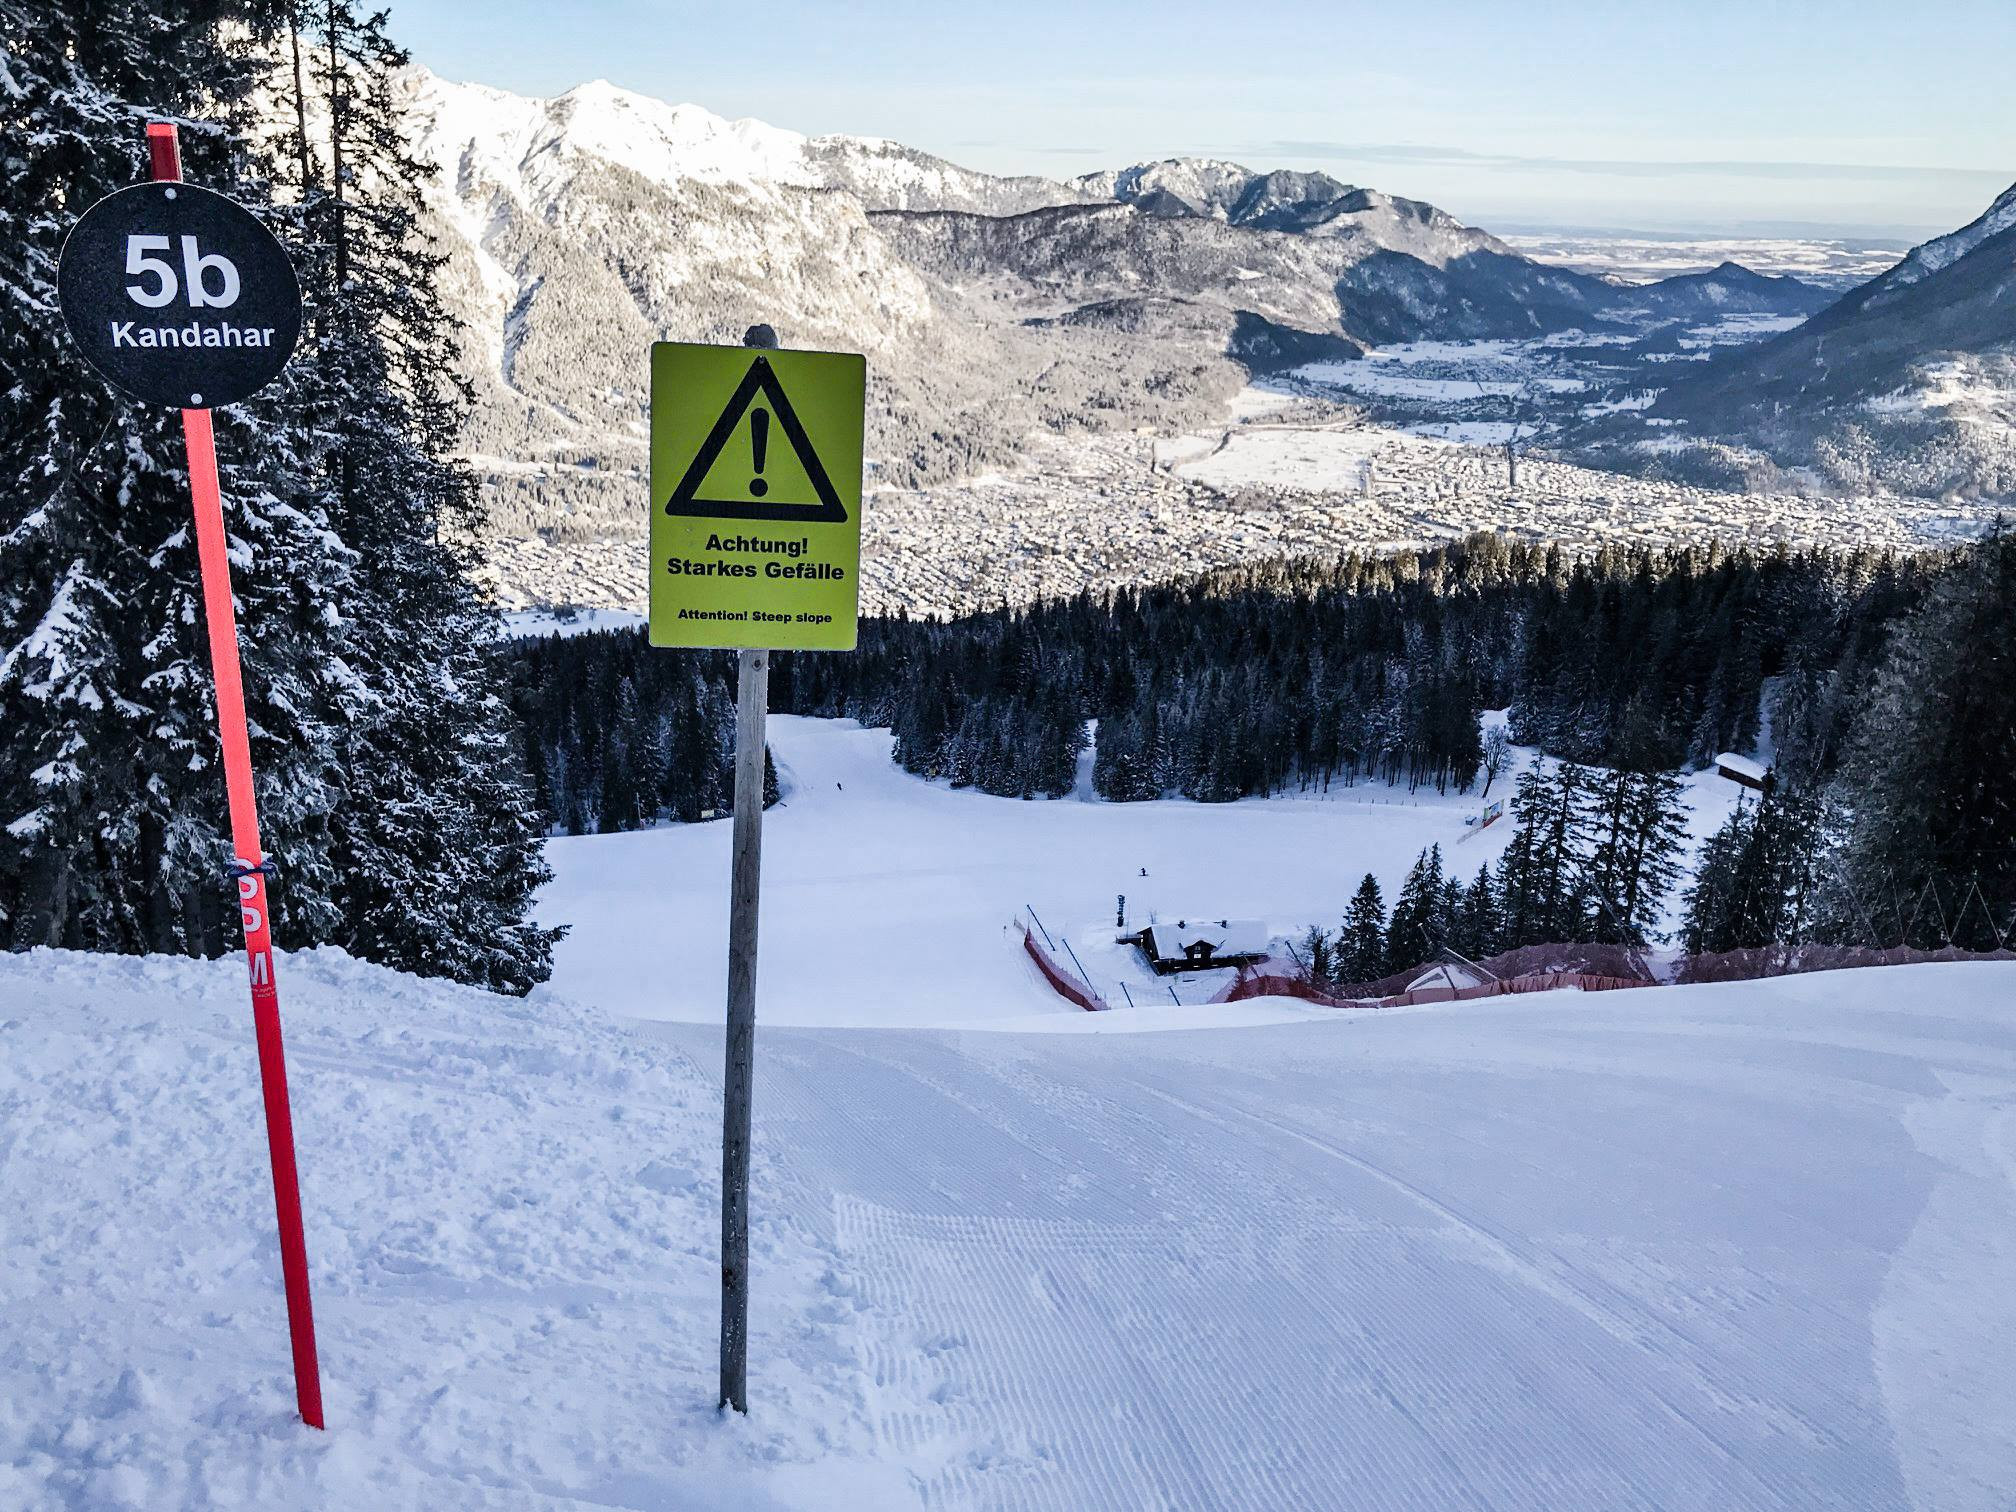 Skigebiet Garmisch Classic Skiurlaub Skifahren Testberichte